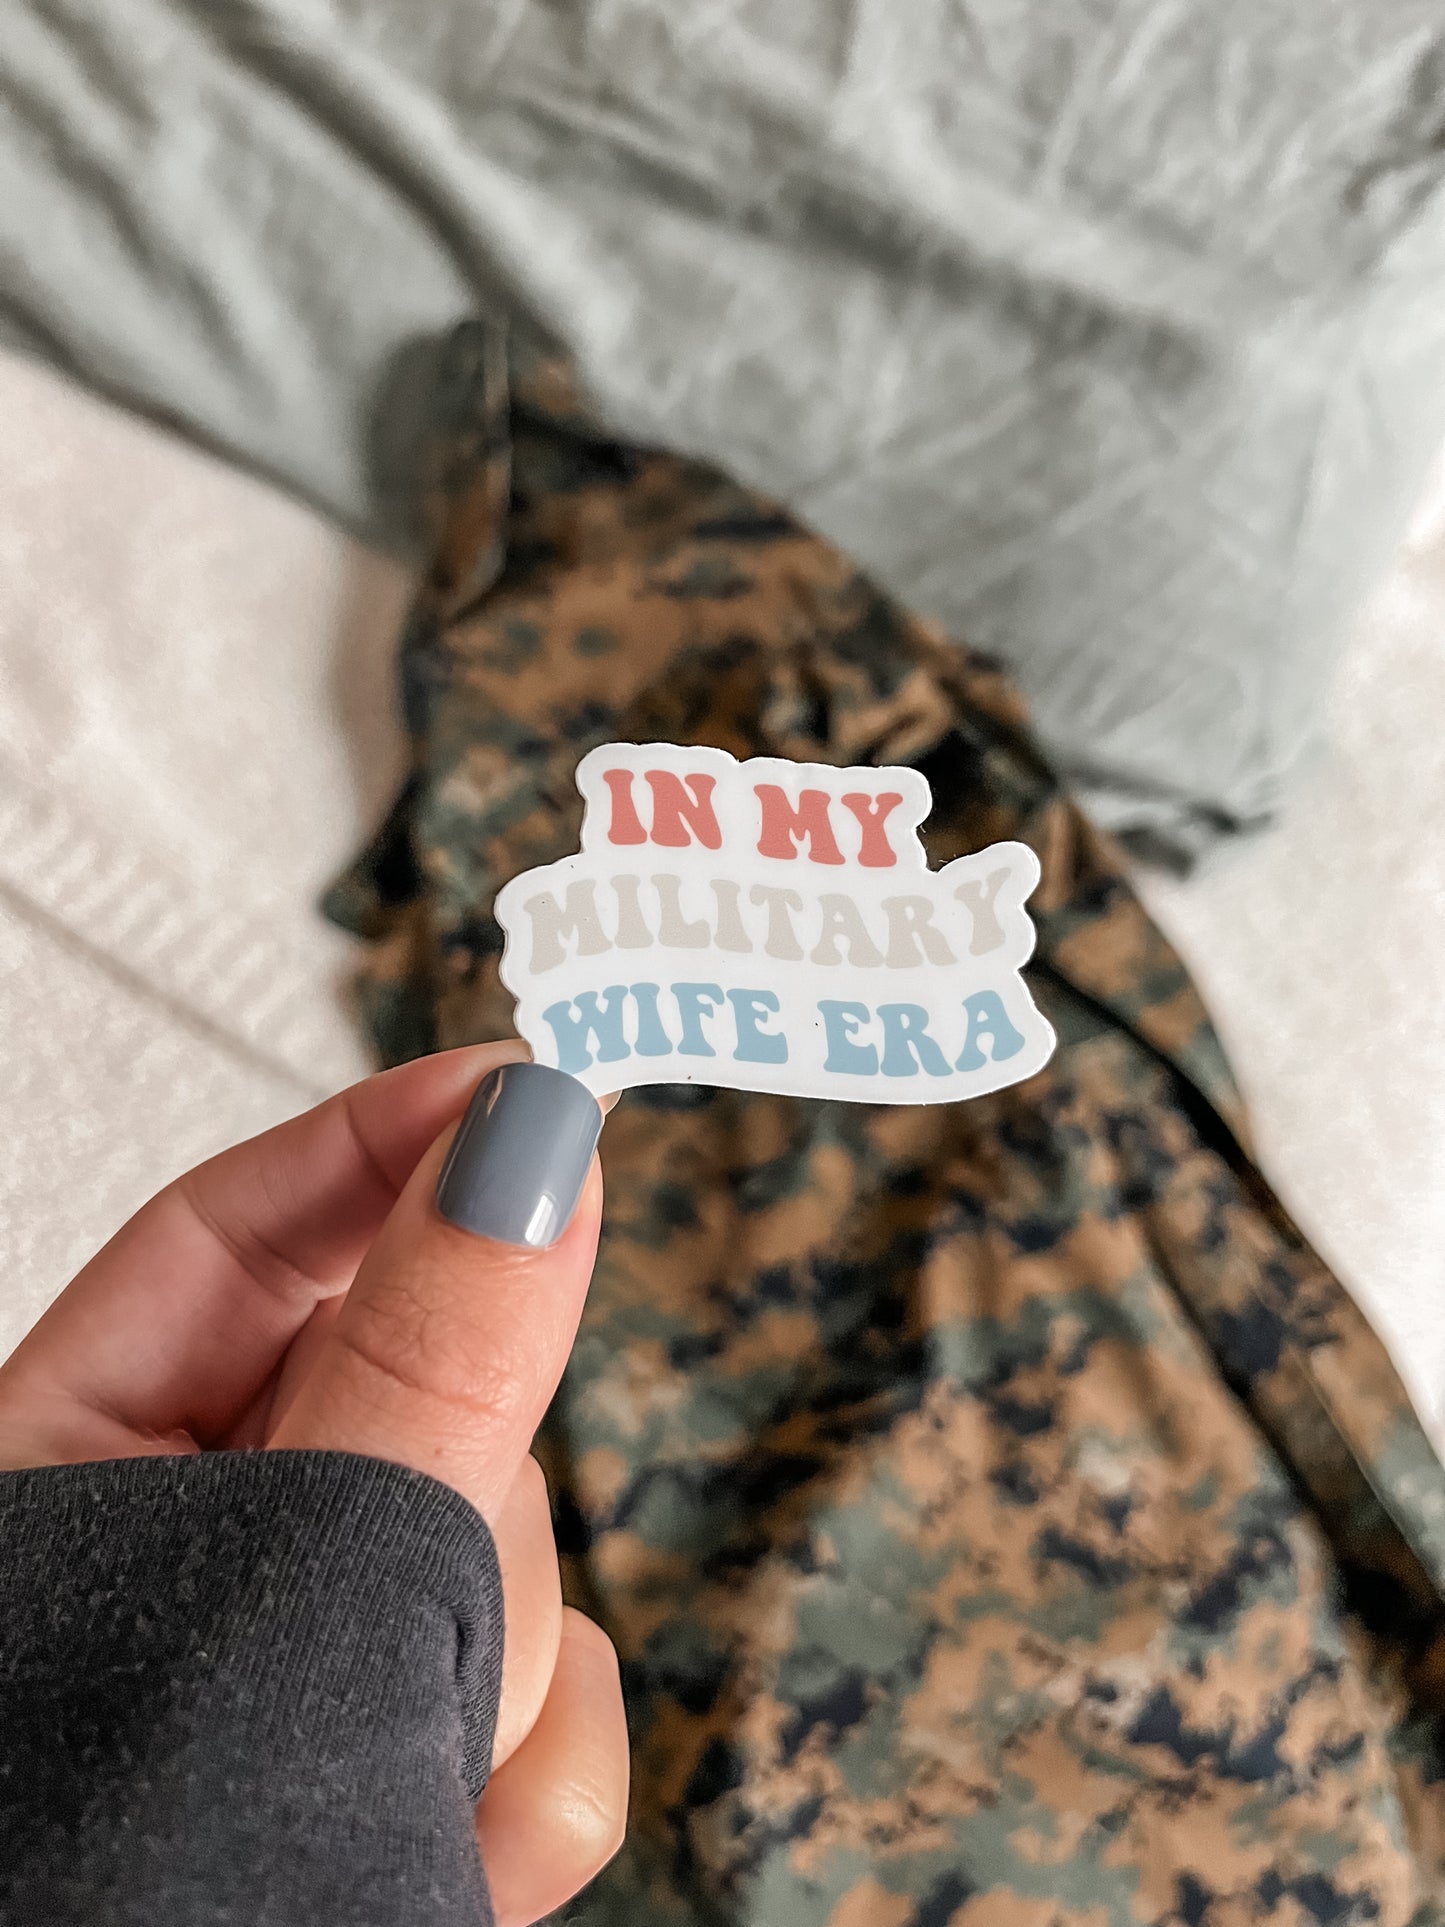 My Military Wife Era Sticker